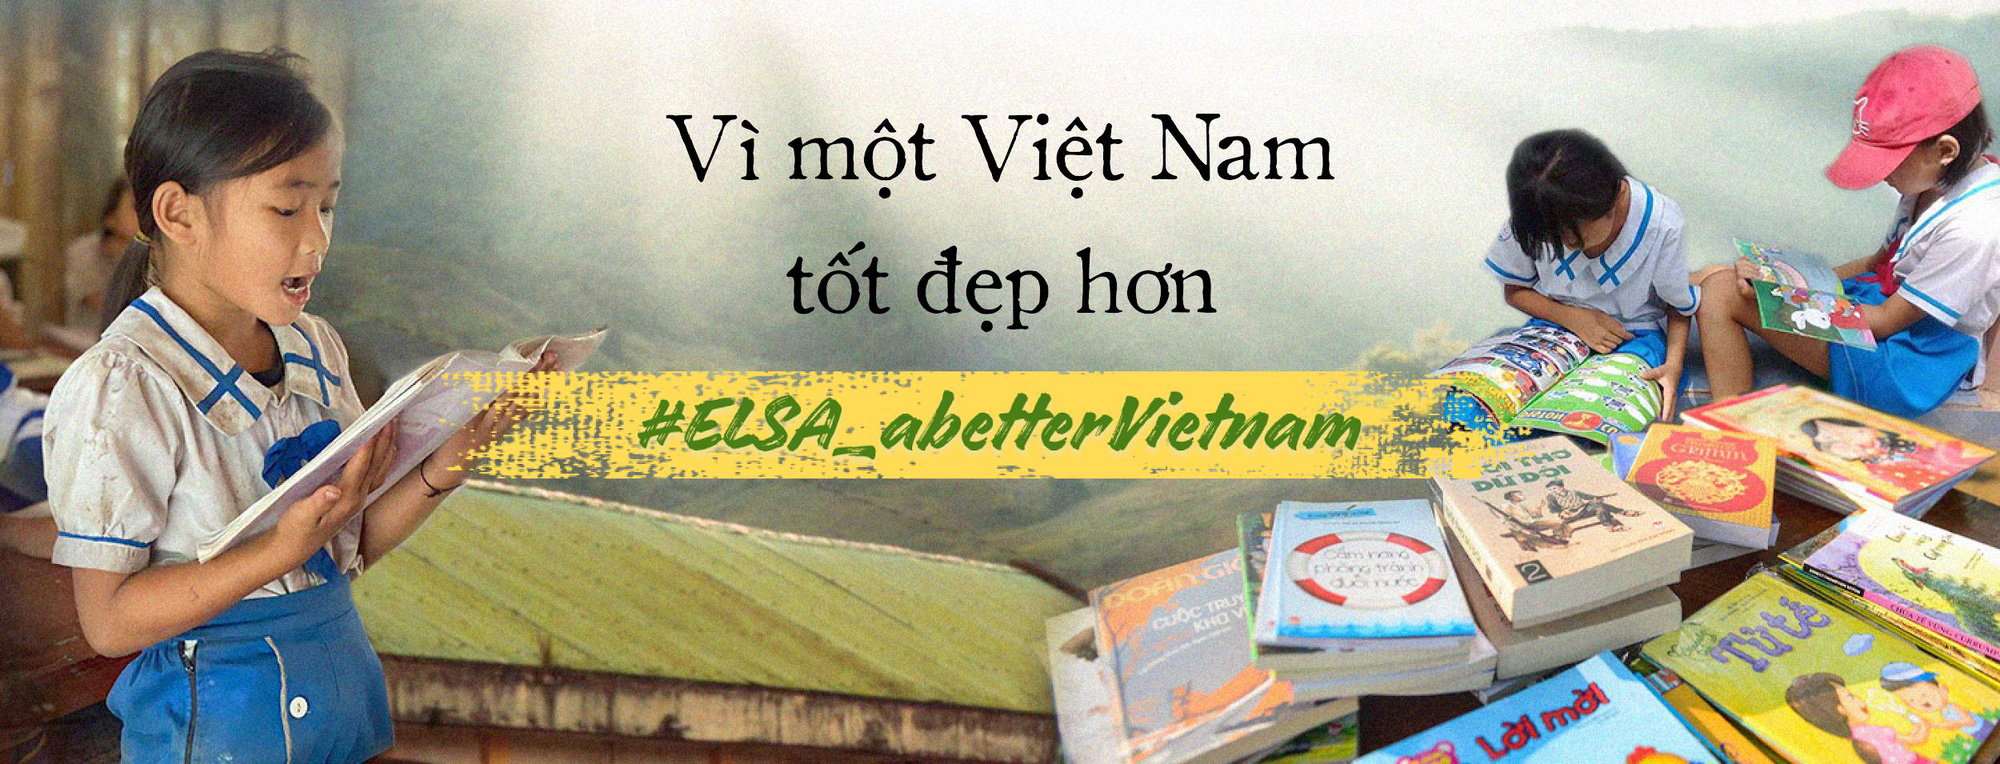 ELSA Speak phát động chiến dịch Vì một Việt Nam tốt đẹp hơn, quyết tâm mang nhiều đầu sách bổ ích đến những ngôi trường còn khó khăn trên cả nước - Ảnh 1.